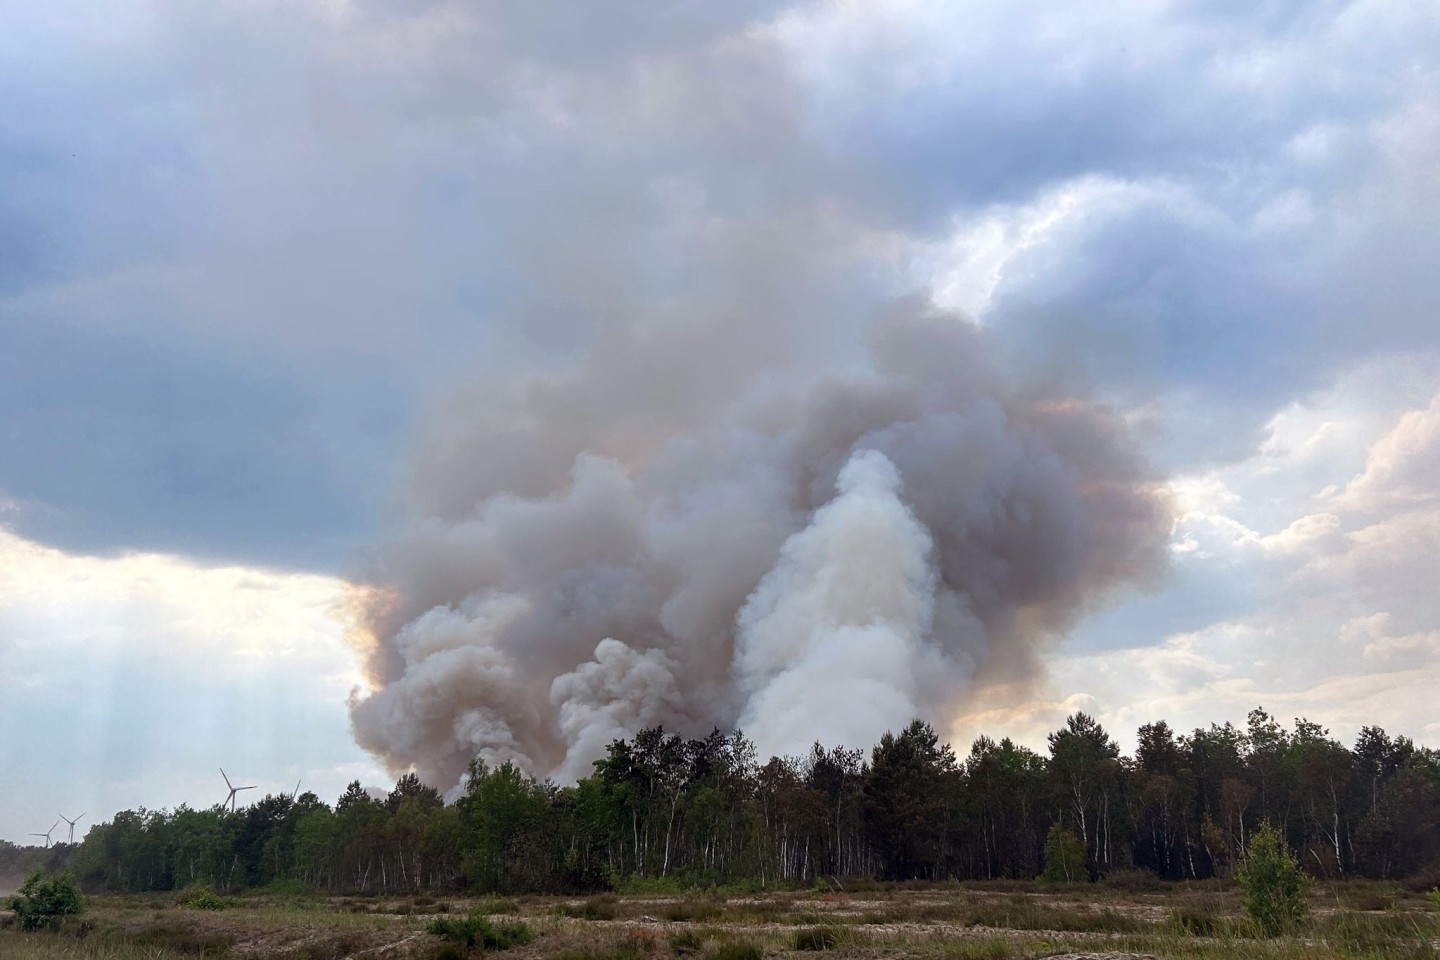 Starker Wind hat den vor einer Woche ausgebrochenen Waldbrand bei Jüterbog nach Angaben der Einsatzleitung wieder angefacht.